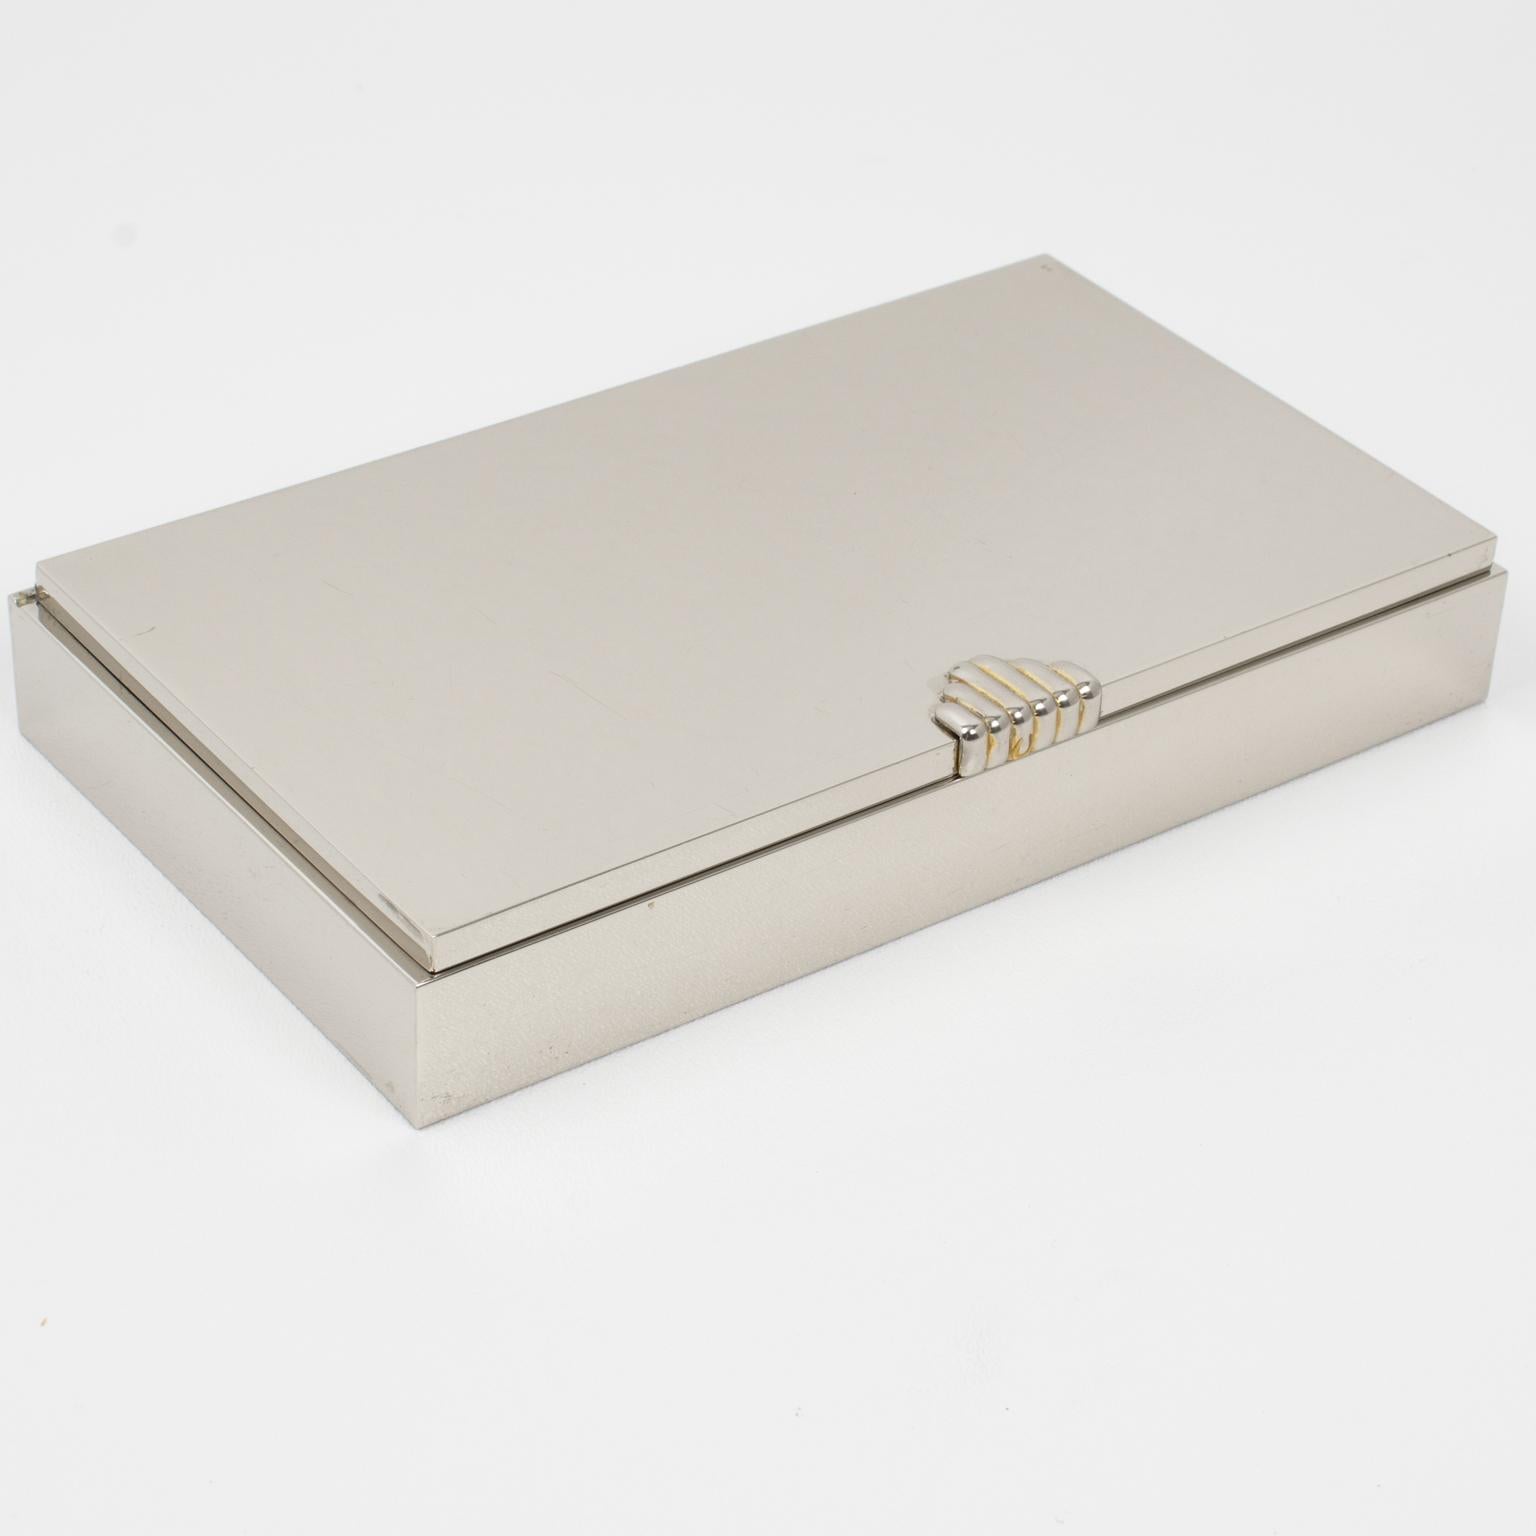 La Maison Lancel Paris a conçu et fabriqué cette élégante boîte décorative à couvercle dans les années 1980. La forme rectangulaire minimaliste présente un design épuré avec un métal chromé poli complété par une application plaquée or sur la poignée